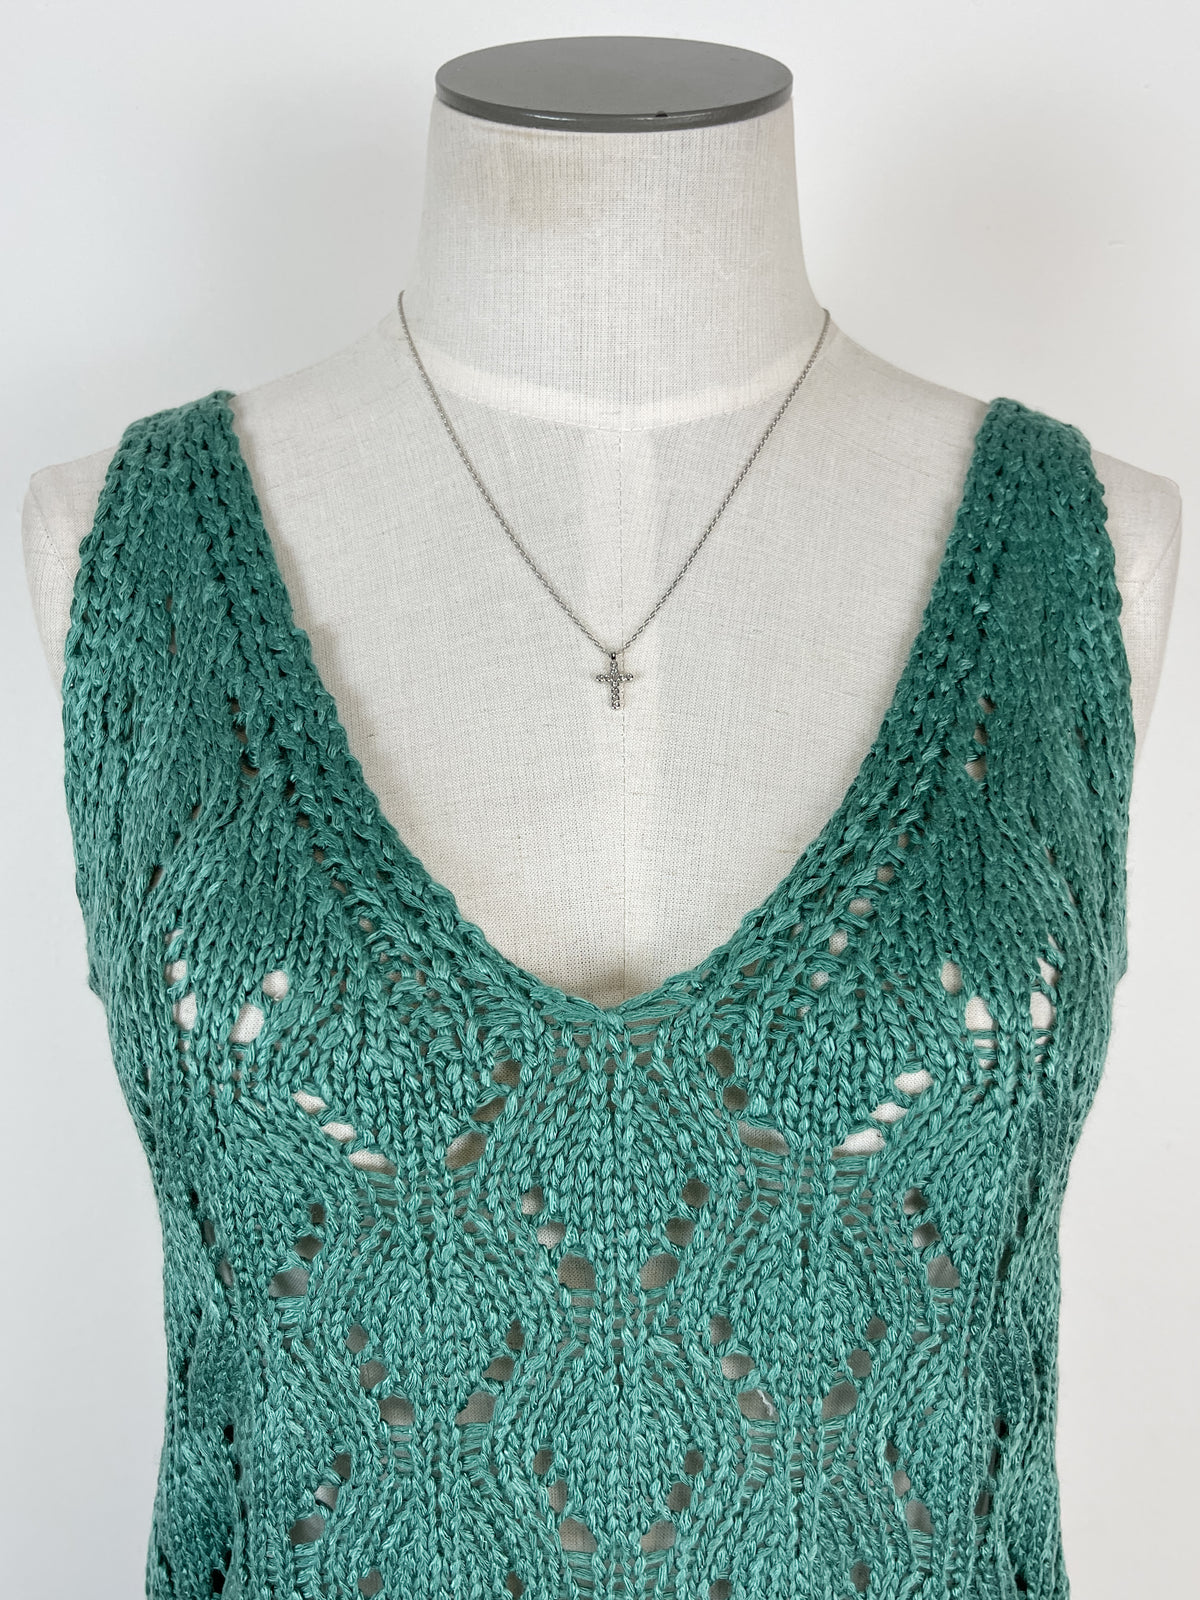 Eloise Crochet Knit Tank in Seafoam